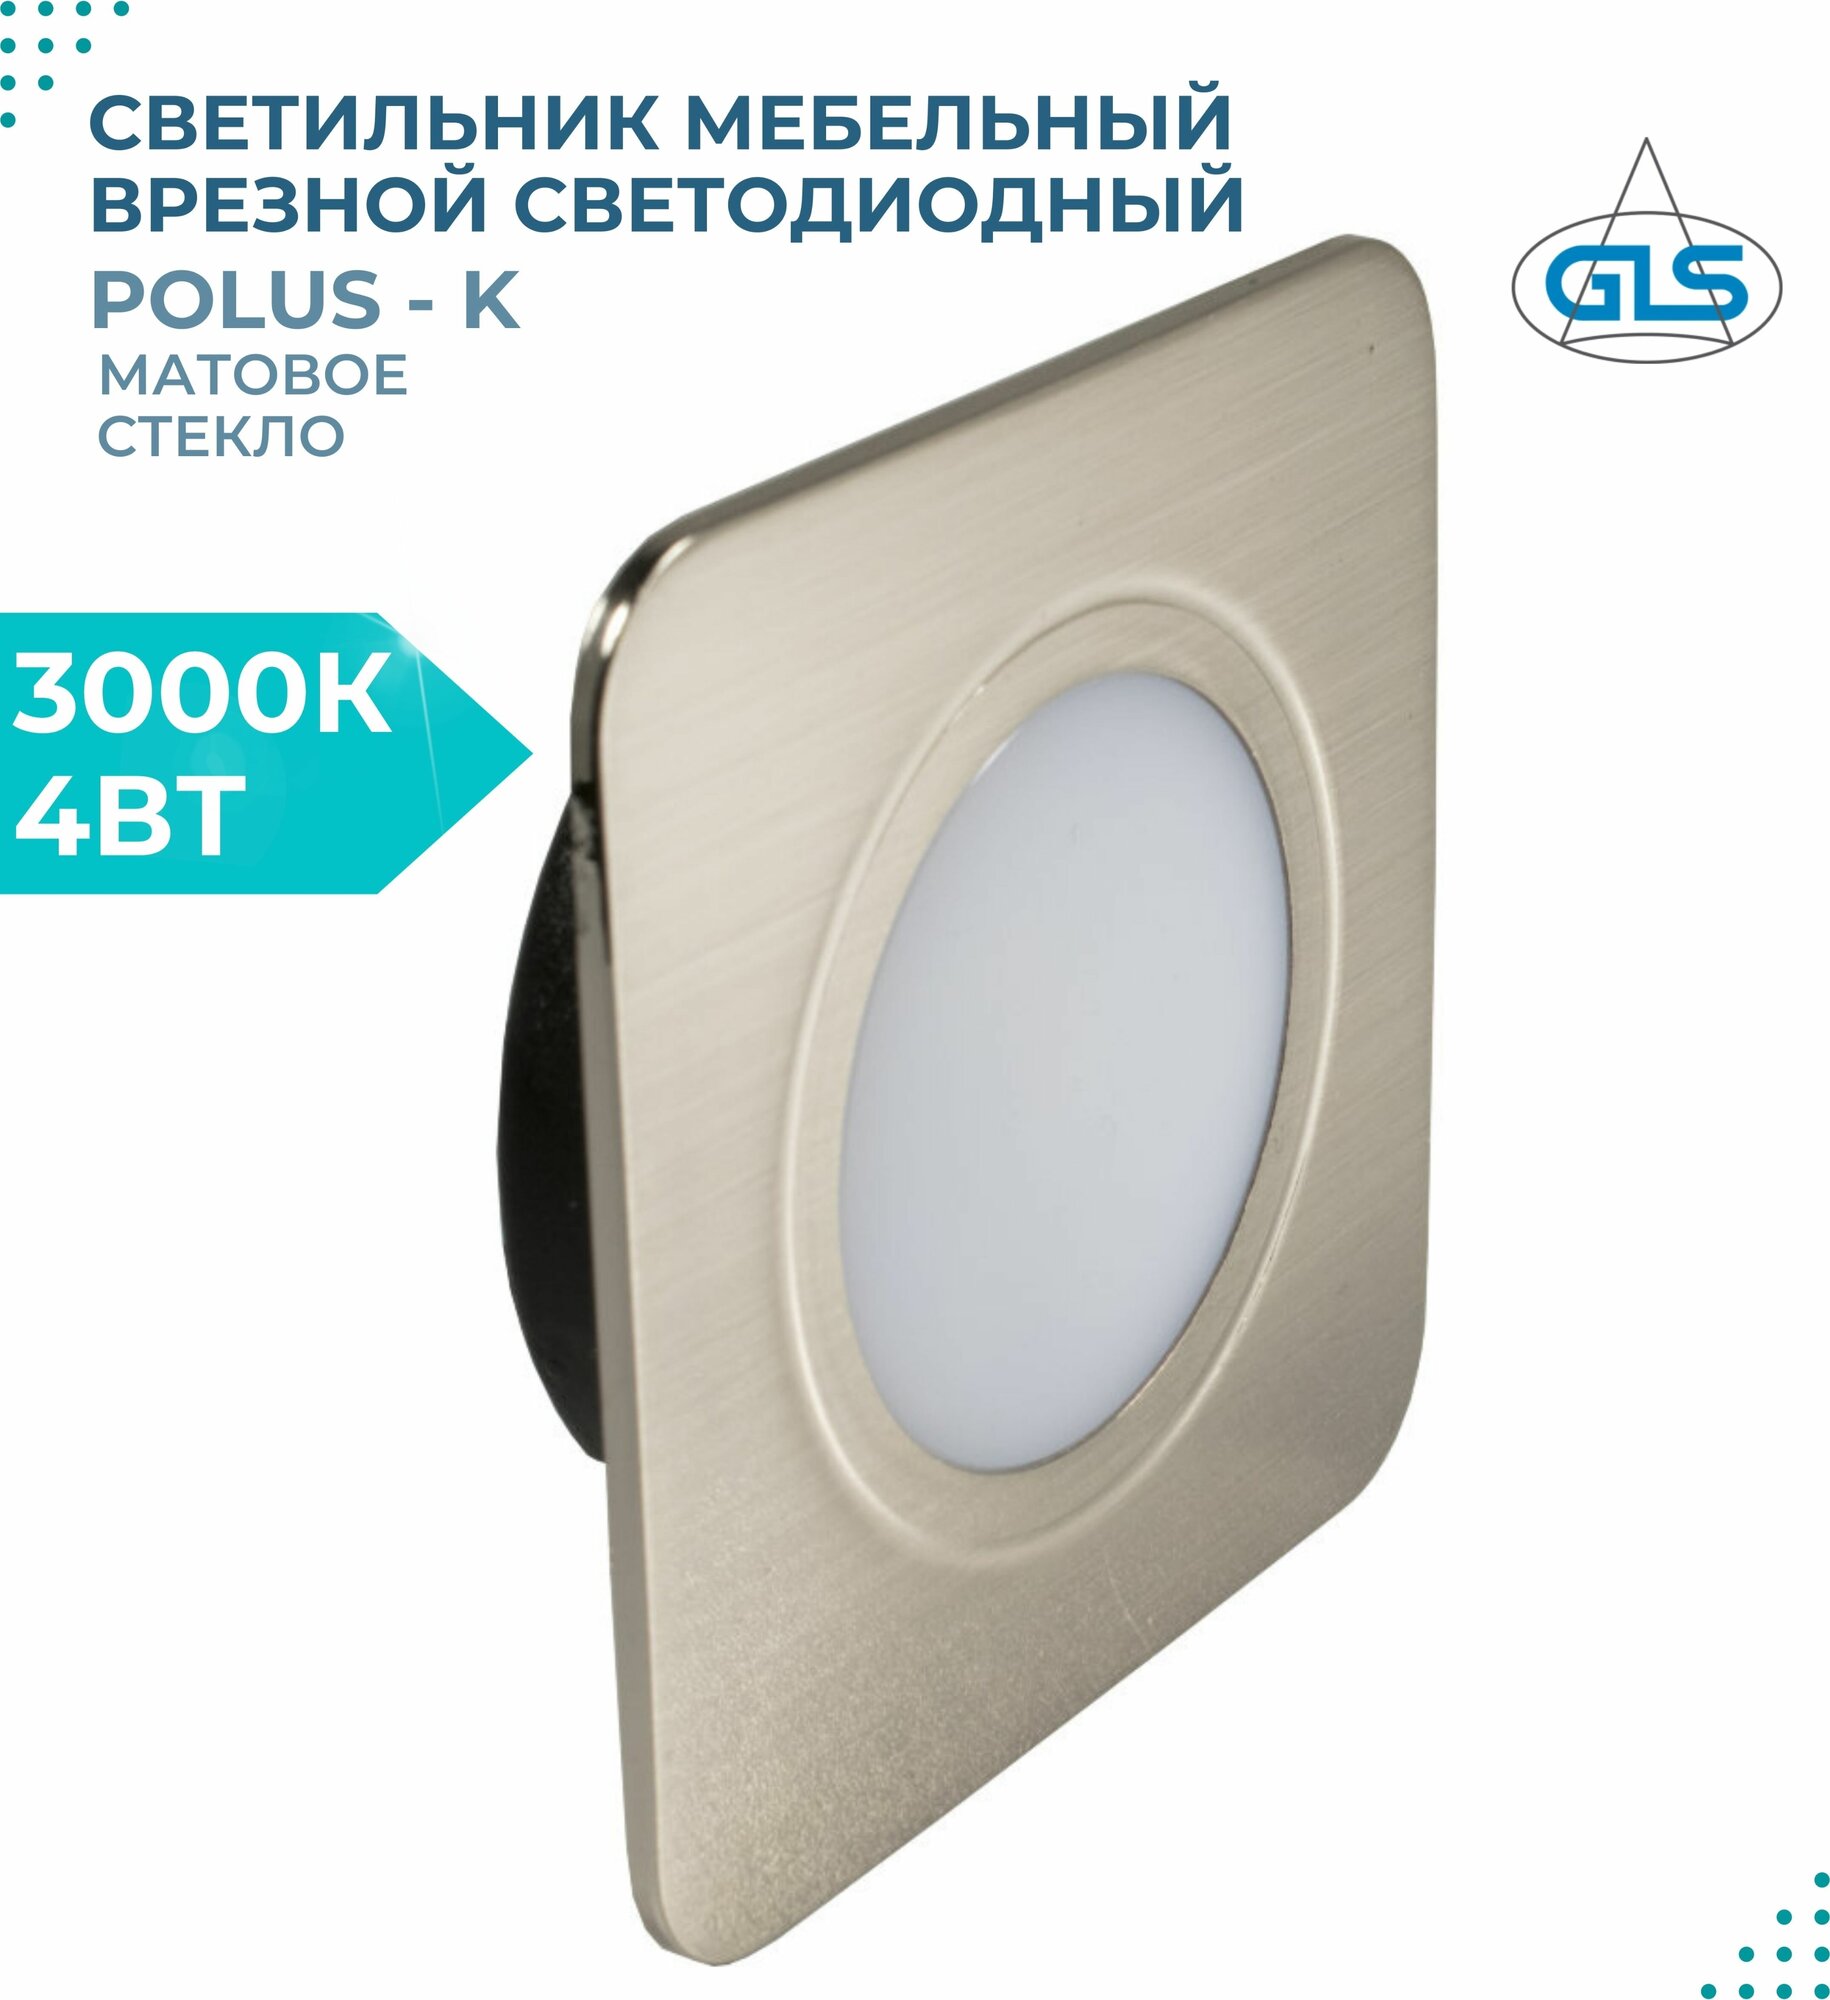 Встраиваемый светильник GLS LED Polus-К (матовое стекло), 4 Вт, 220V IP44,3000К, светодиодный мебельный врезной, цвет никель